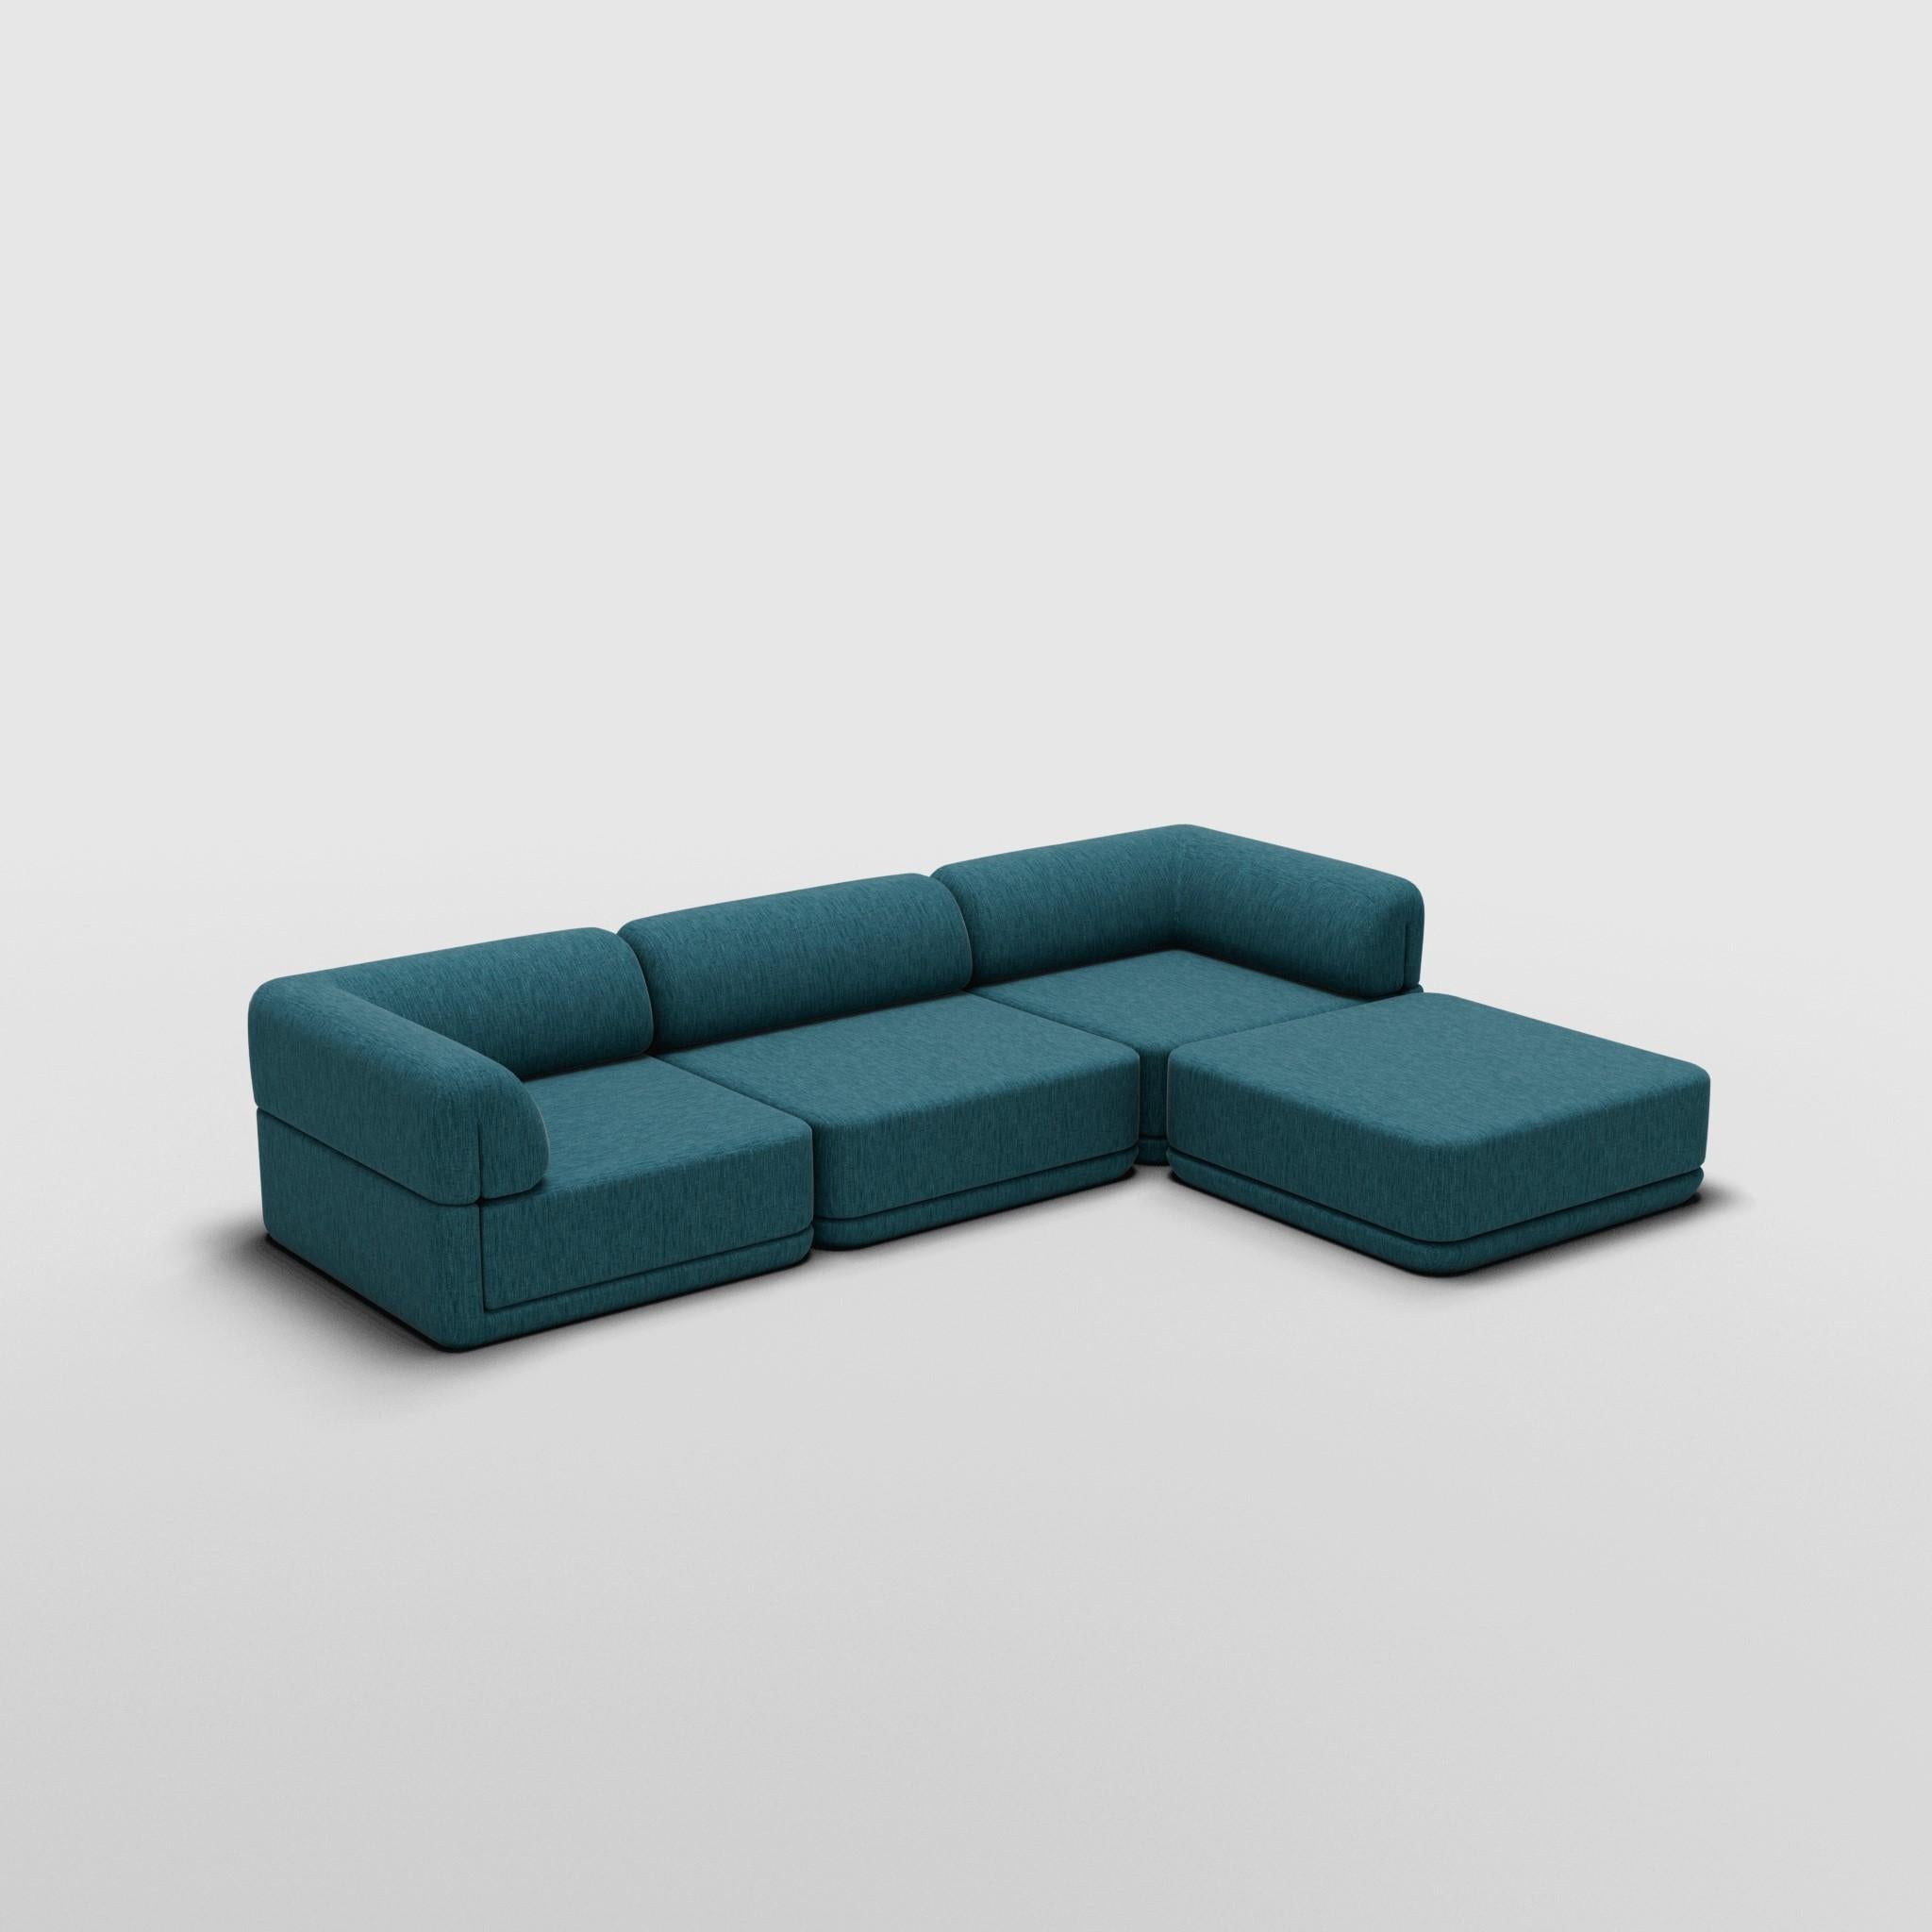 Sofa Lounge mit Ottomane - Inspiriert von italienischen Luxusmöbeln der 70er Jahre

Entdecken Sie das Cube Sofa, wo Kunst auf Anpassungsfähigkeit trifft. Sein skulpturales Design und der individuell anpassbare Komfort schaffen unendliche